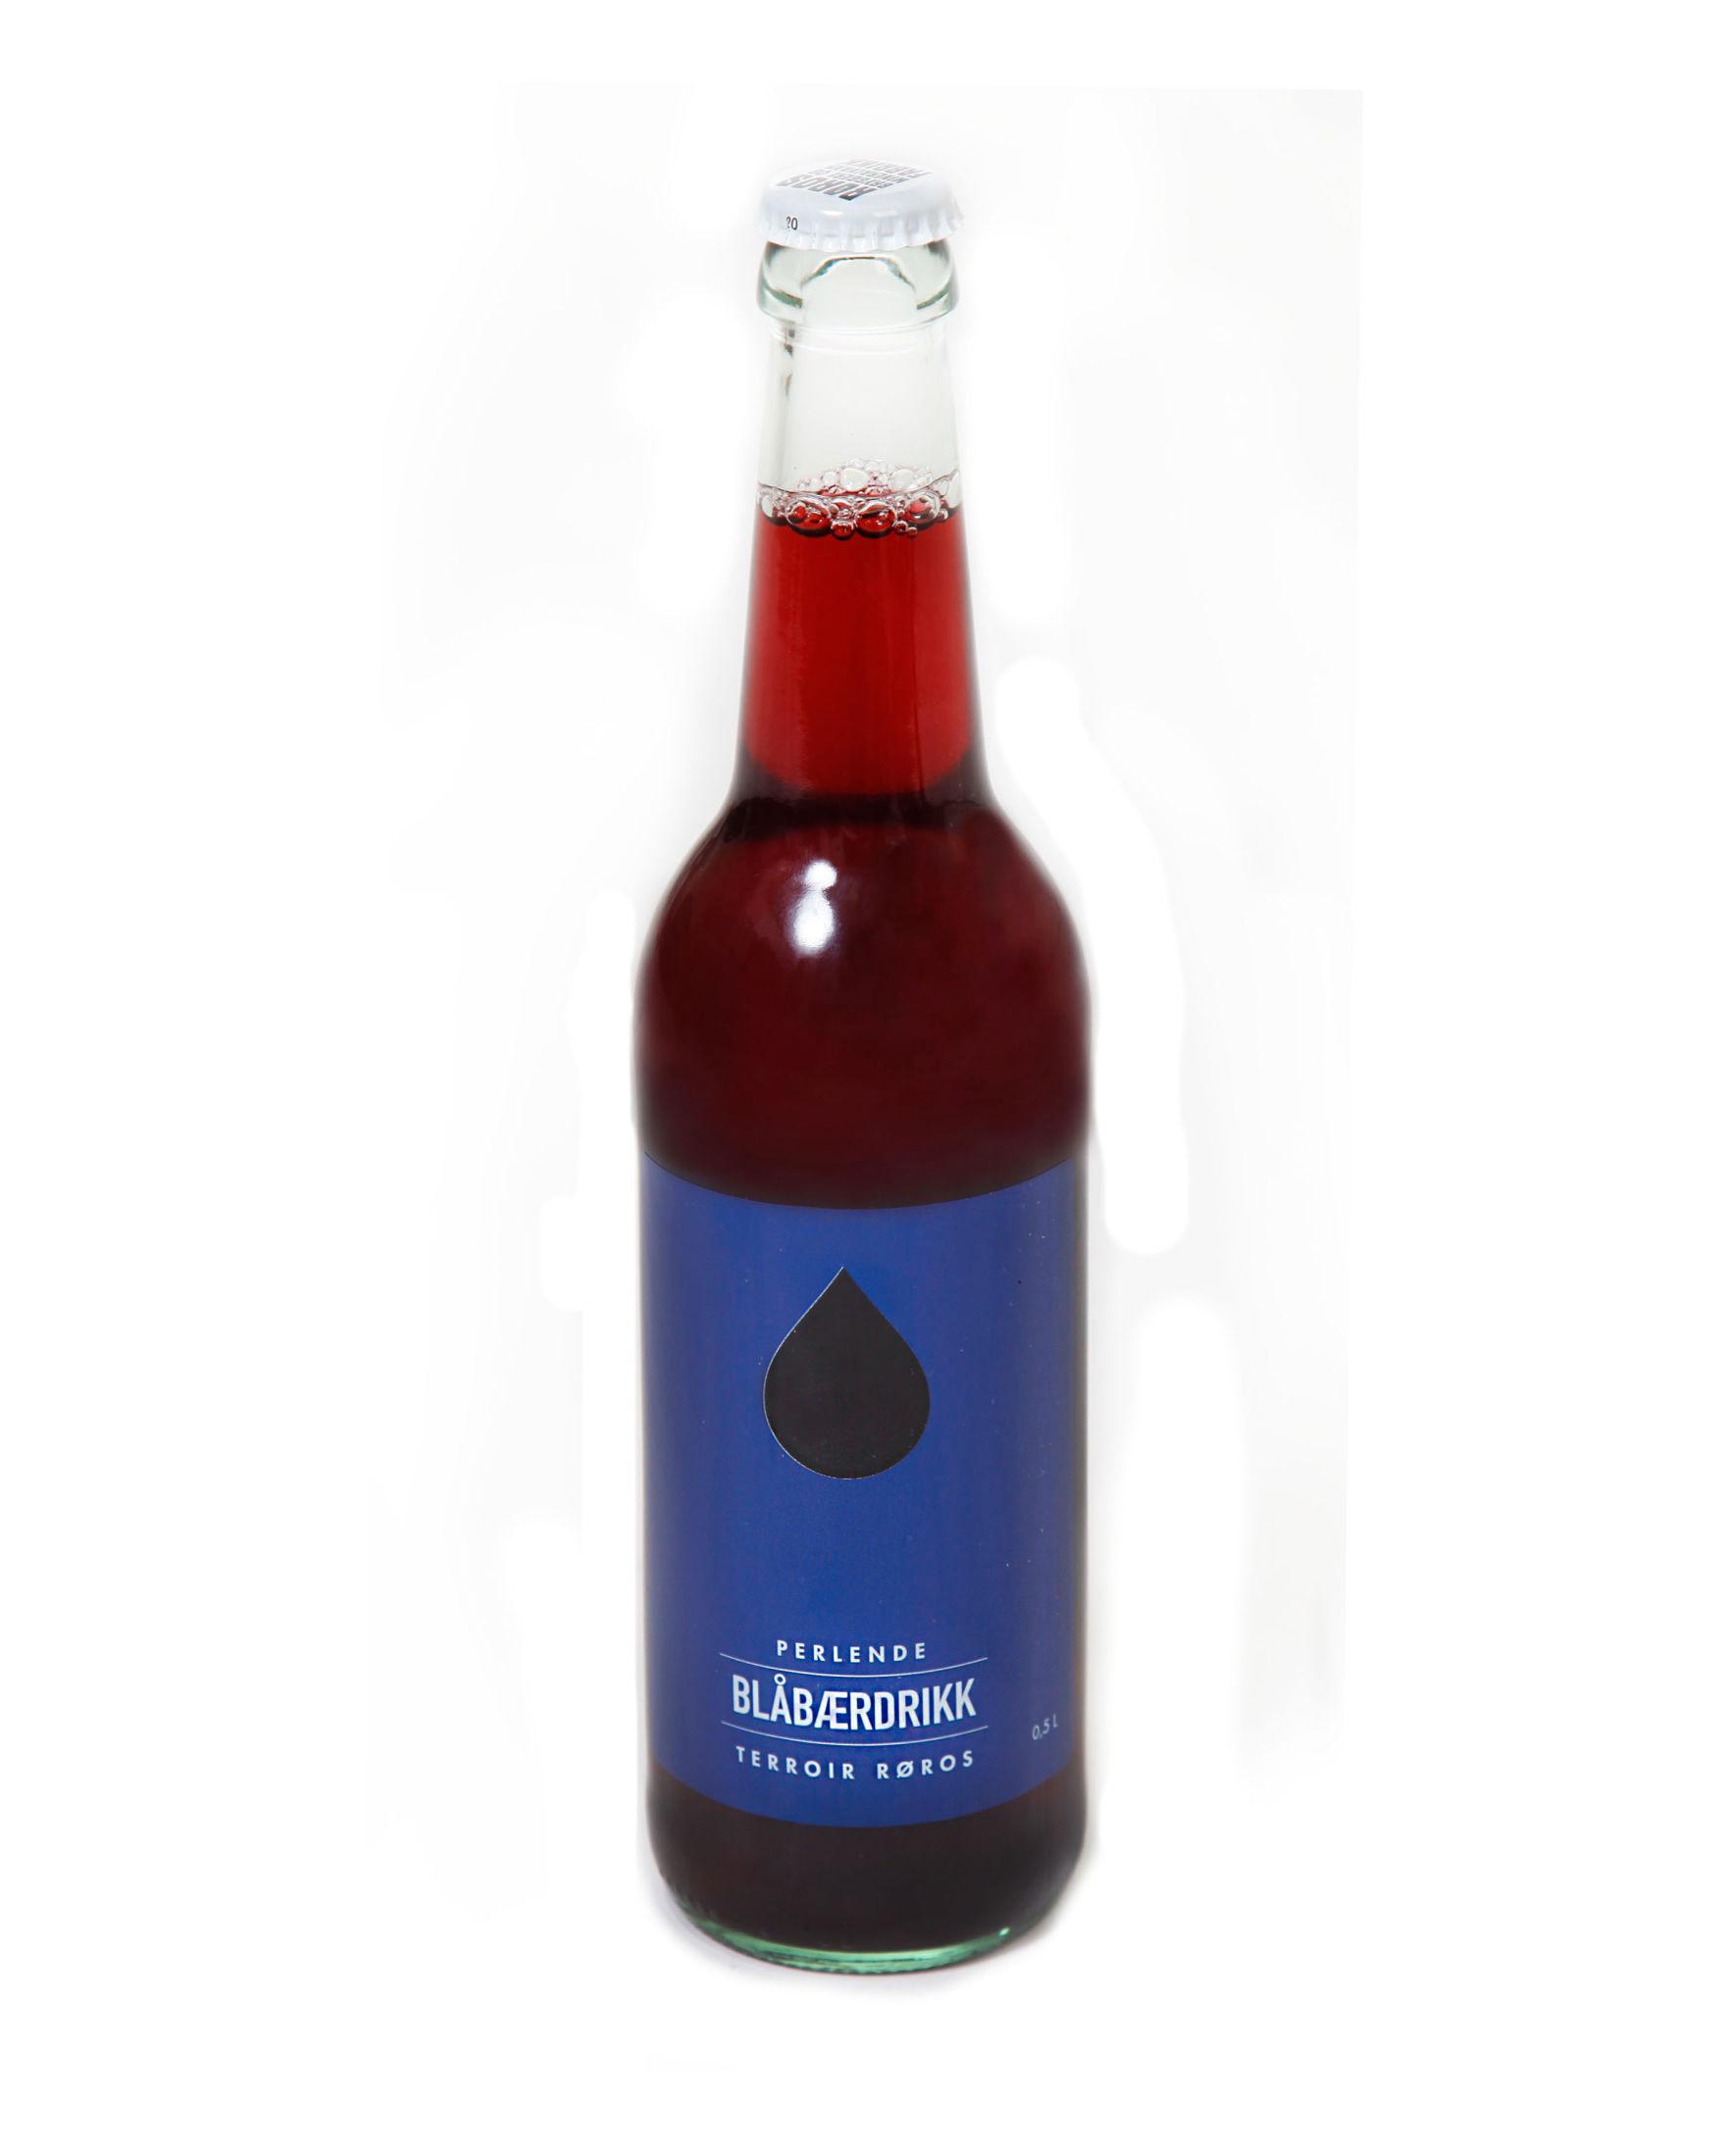 PERLENDE BLÅBÆRDRIKK: Økologisk og lett karbonisert drikke laget på blåbær fra Røros-området.